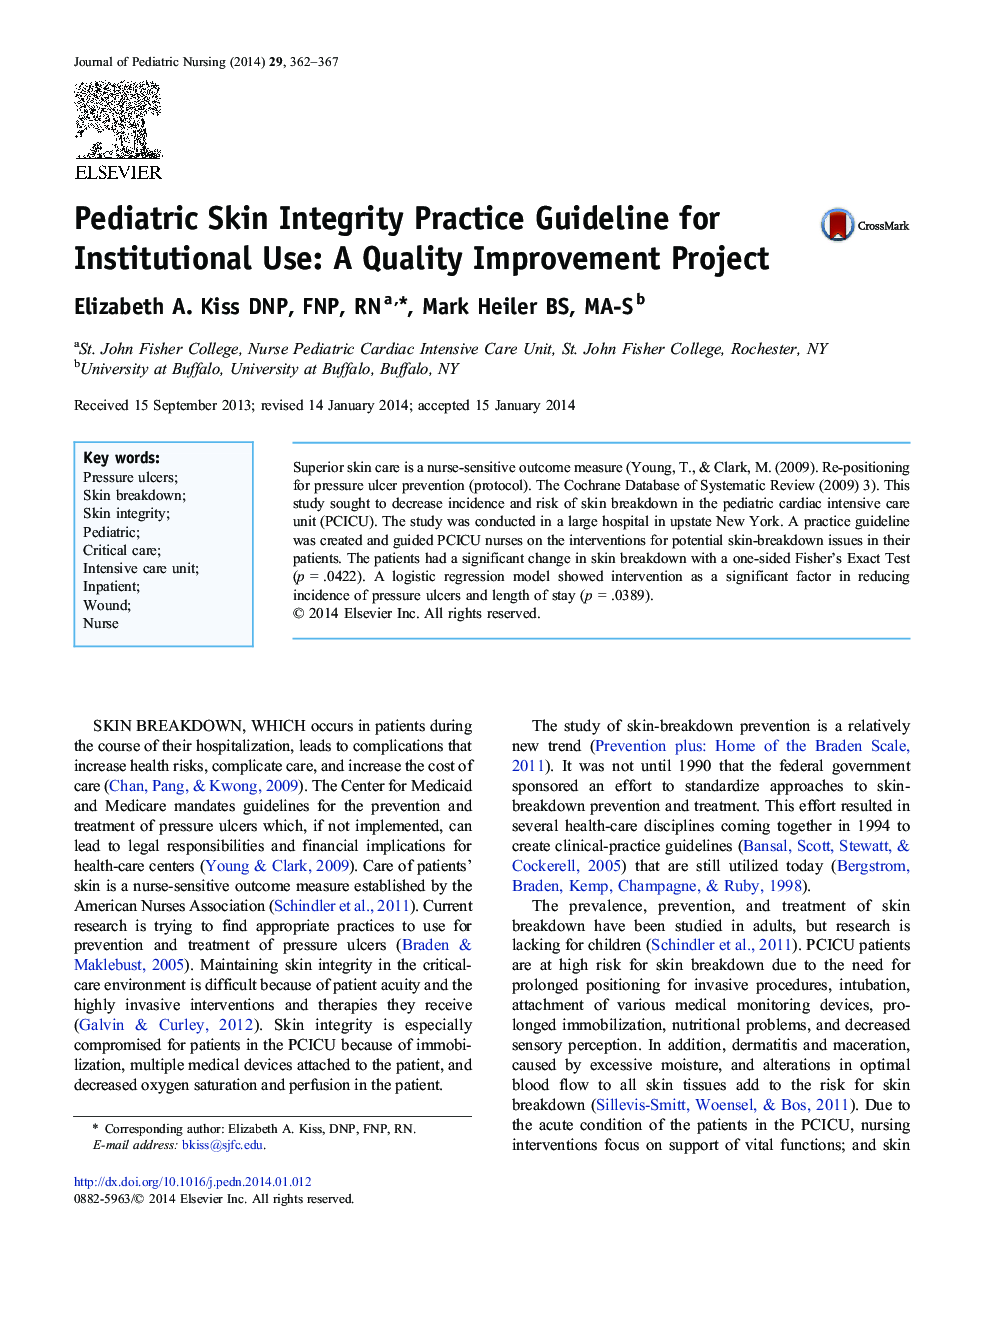 دستورالعمل مراقبت کامل پوست بیماران کودک برای استفاده سازمانی: پروژه بهبود کیفیت